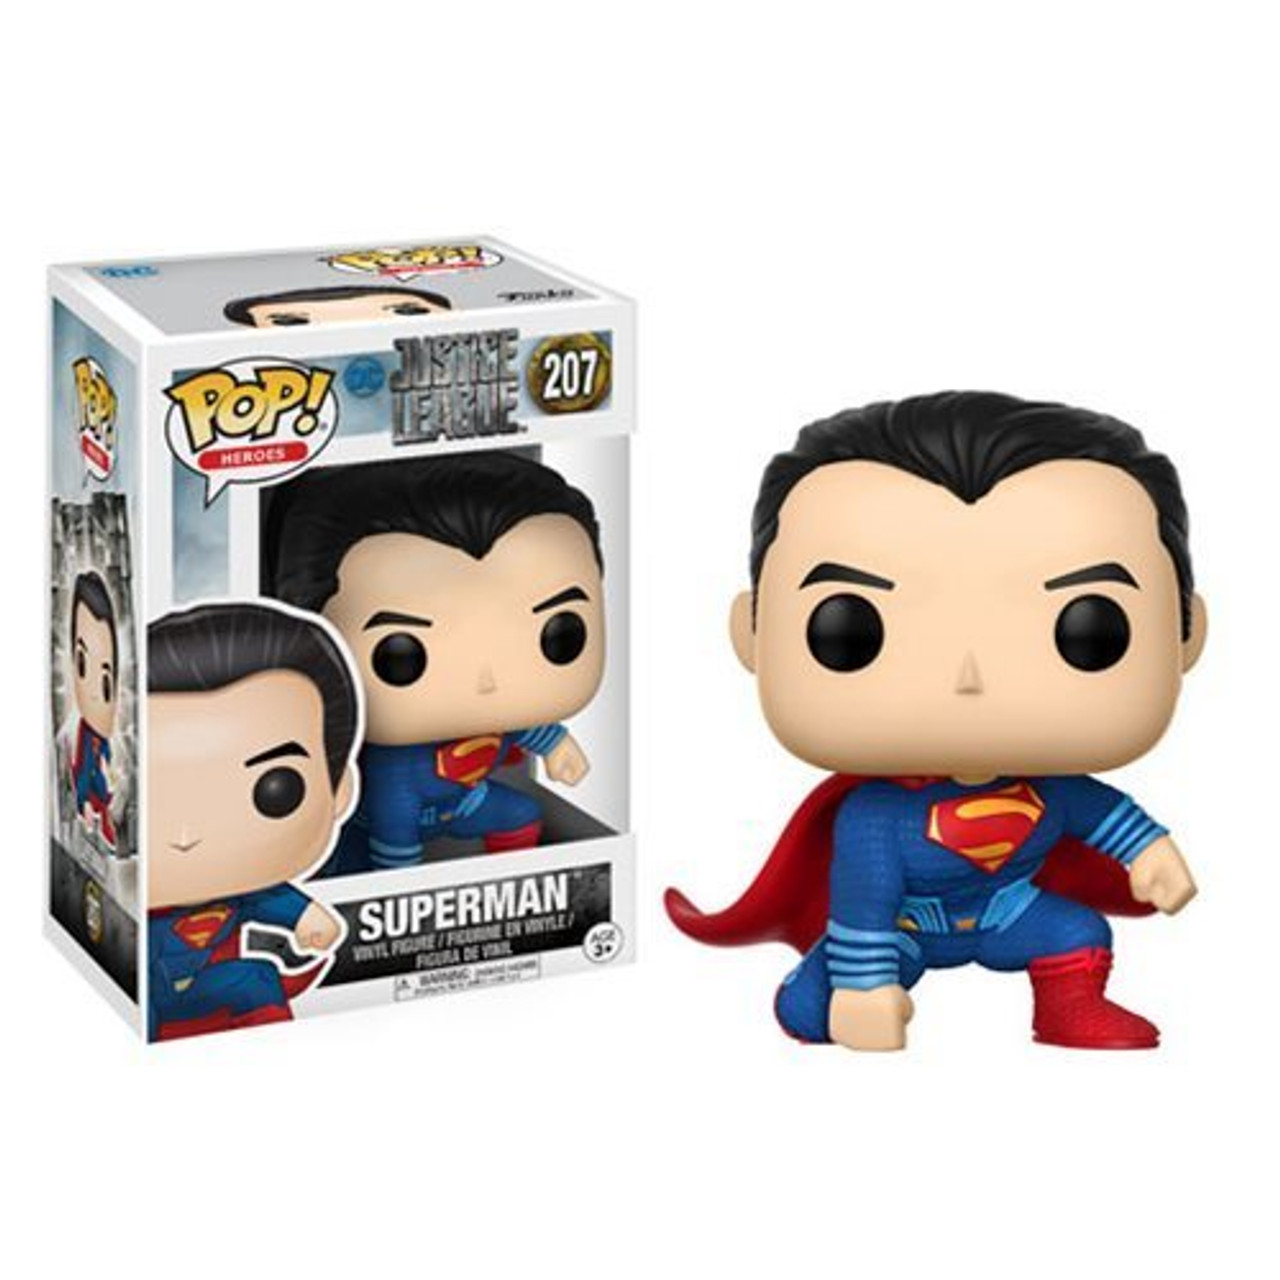 13704 Justice League Movie Superman Pop! Vinyl Figure